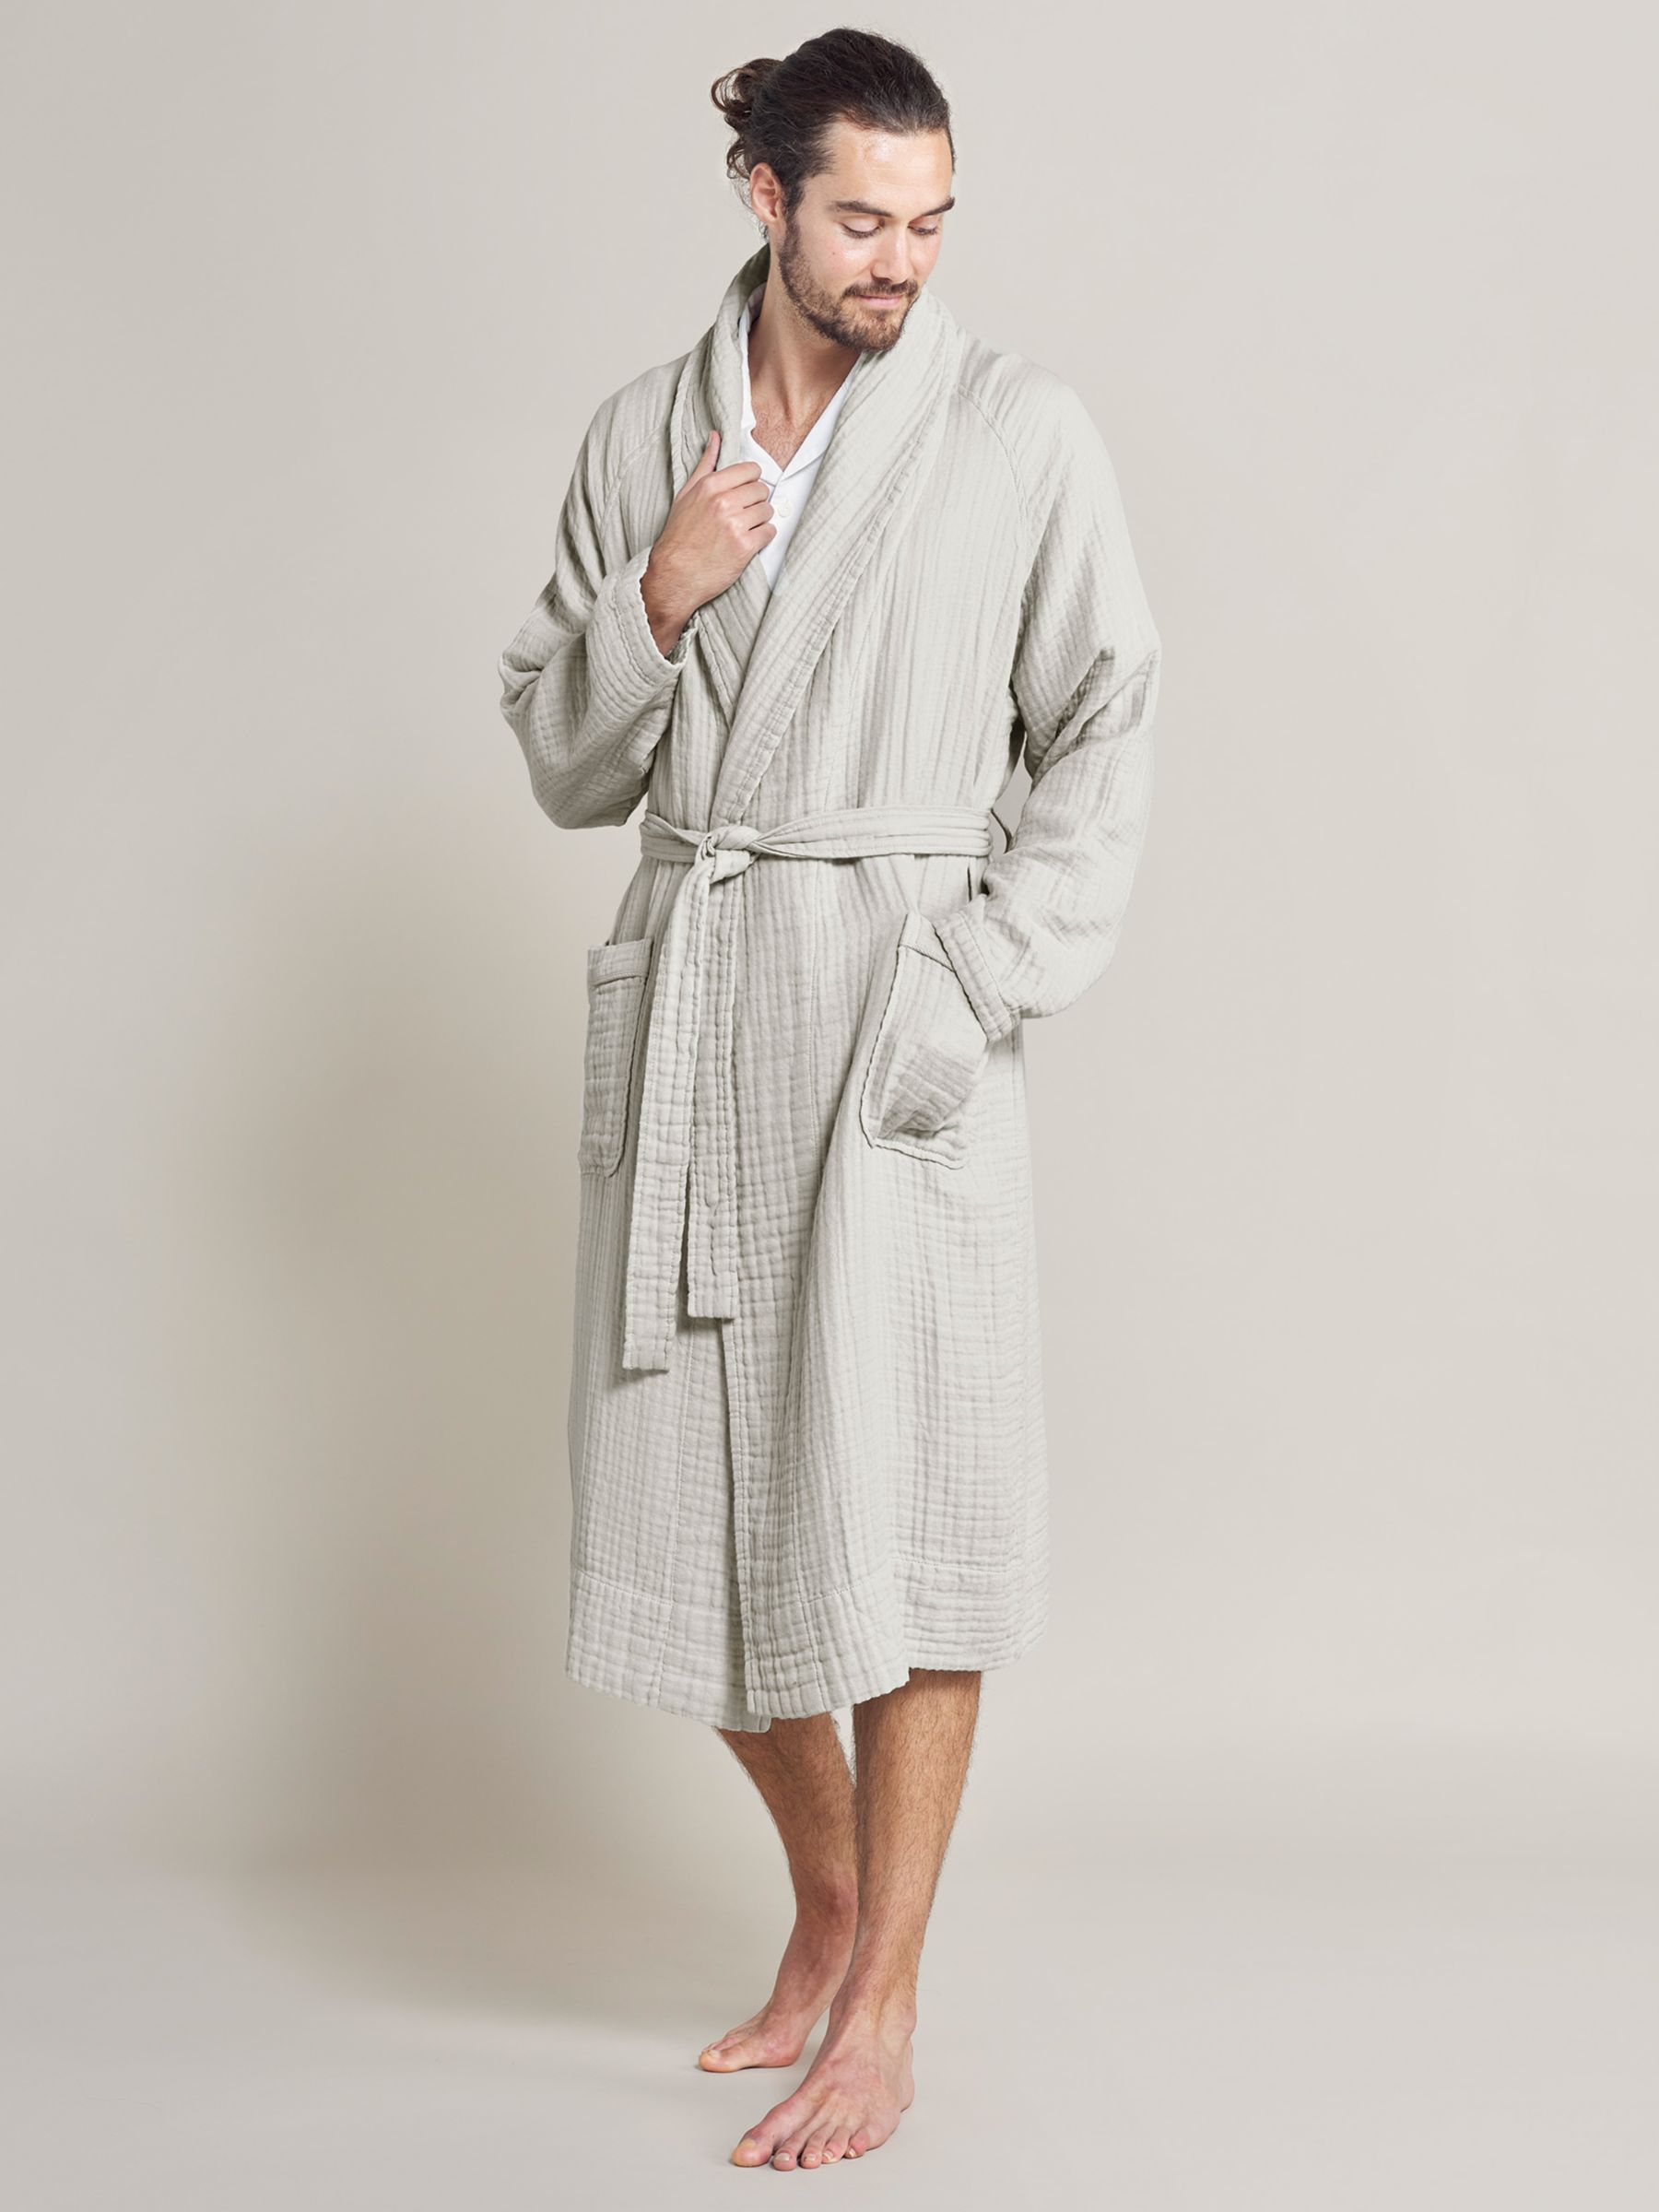 Bedfolk Dream Cotton Robe, Clay, XS